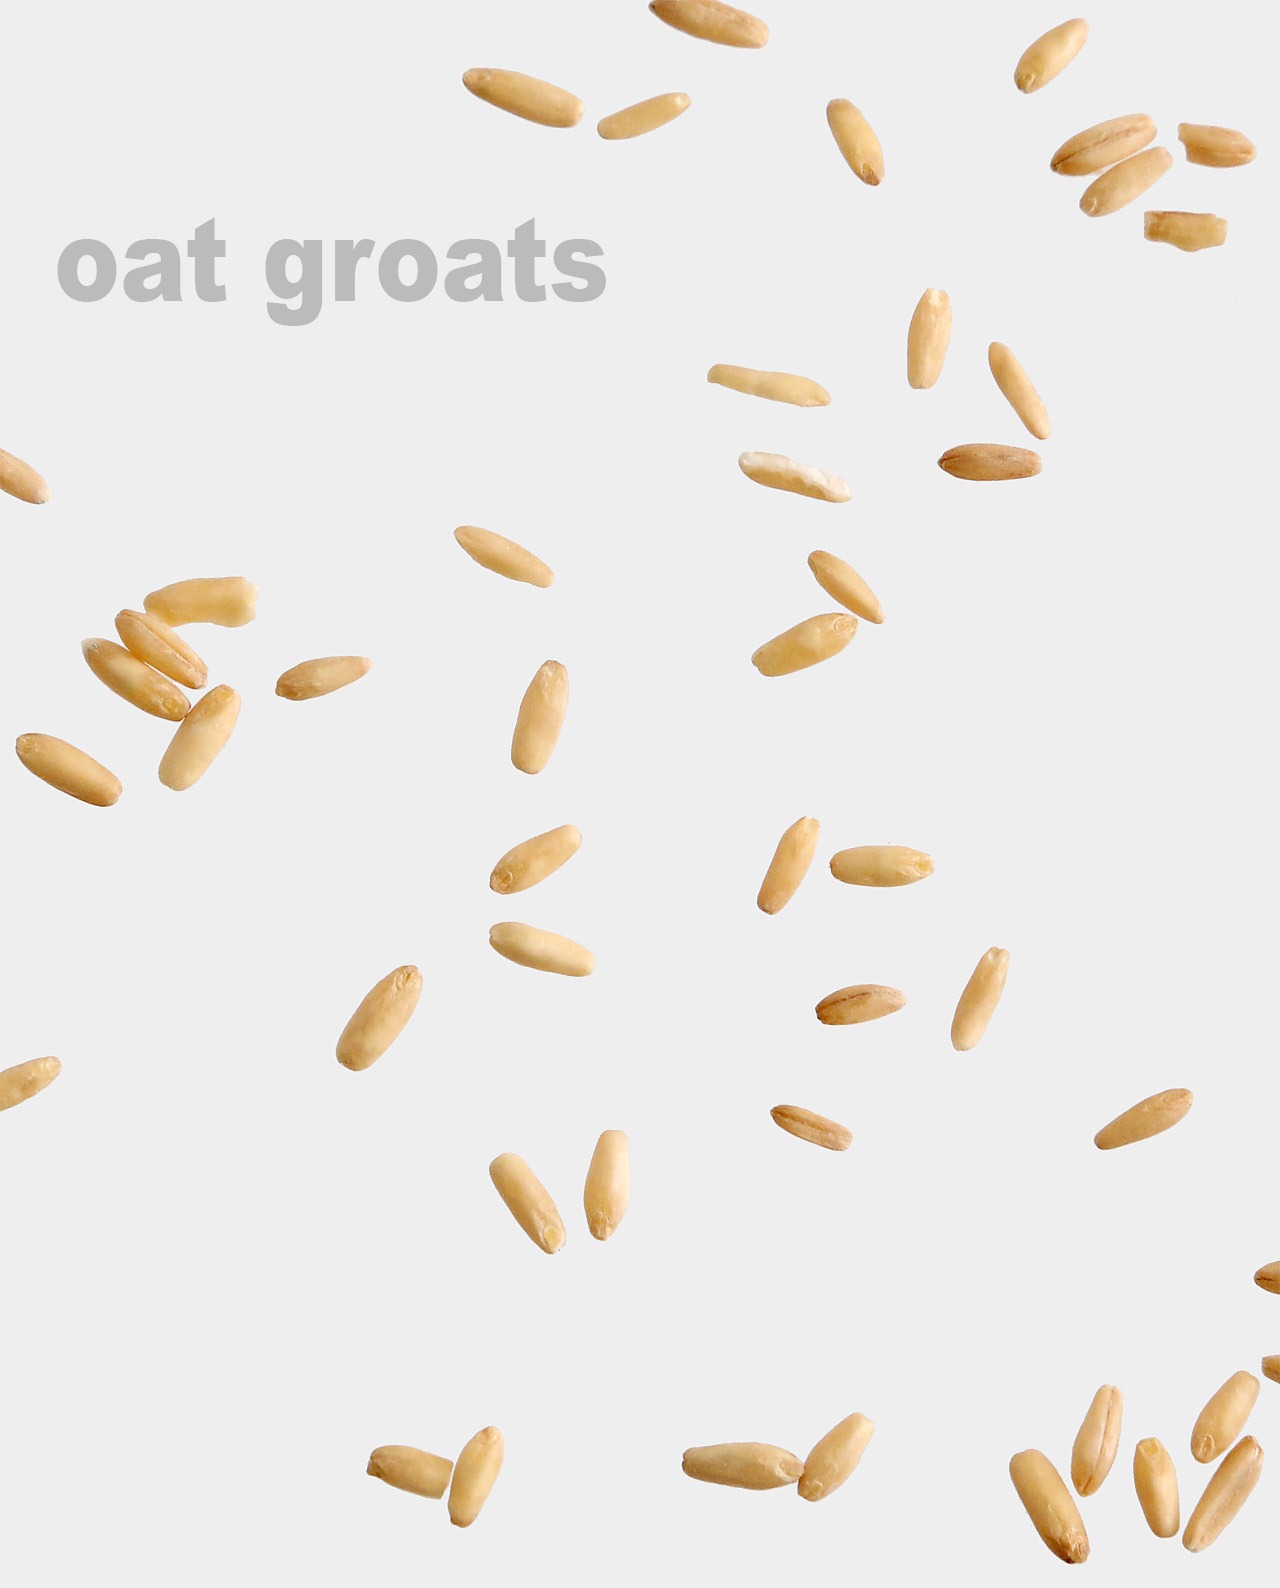 Whole Oat Groats